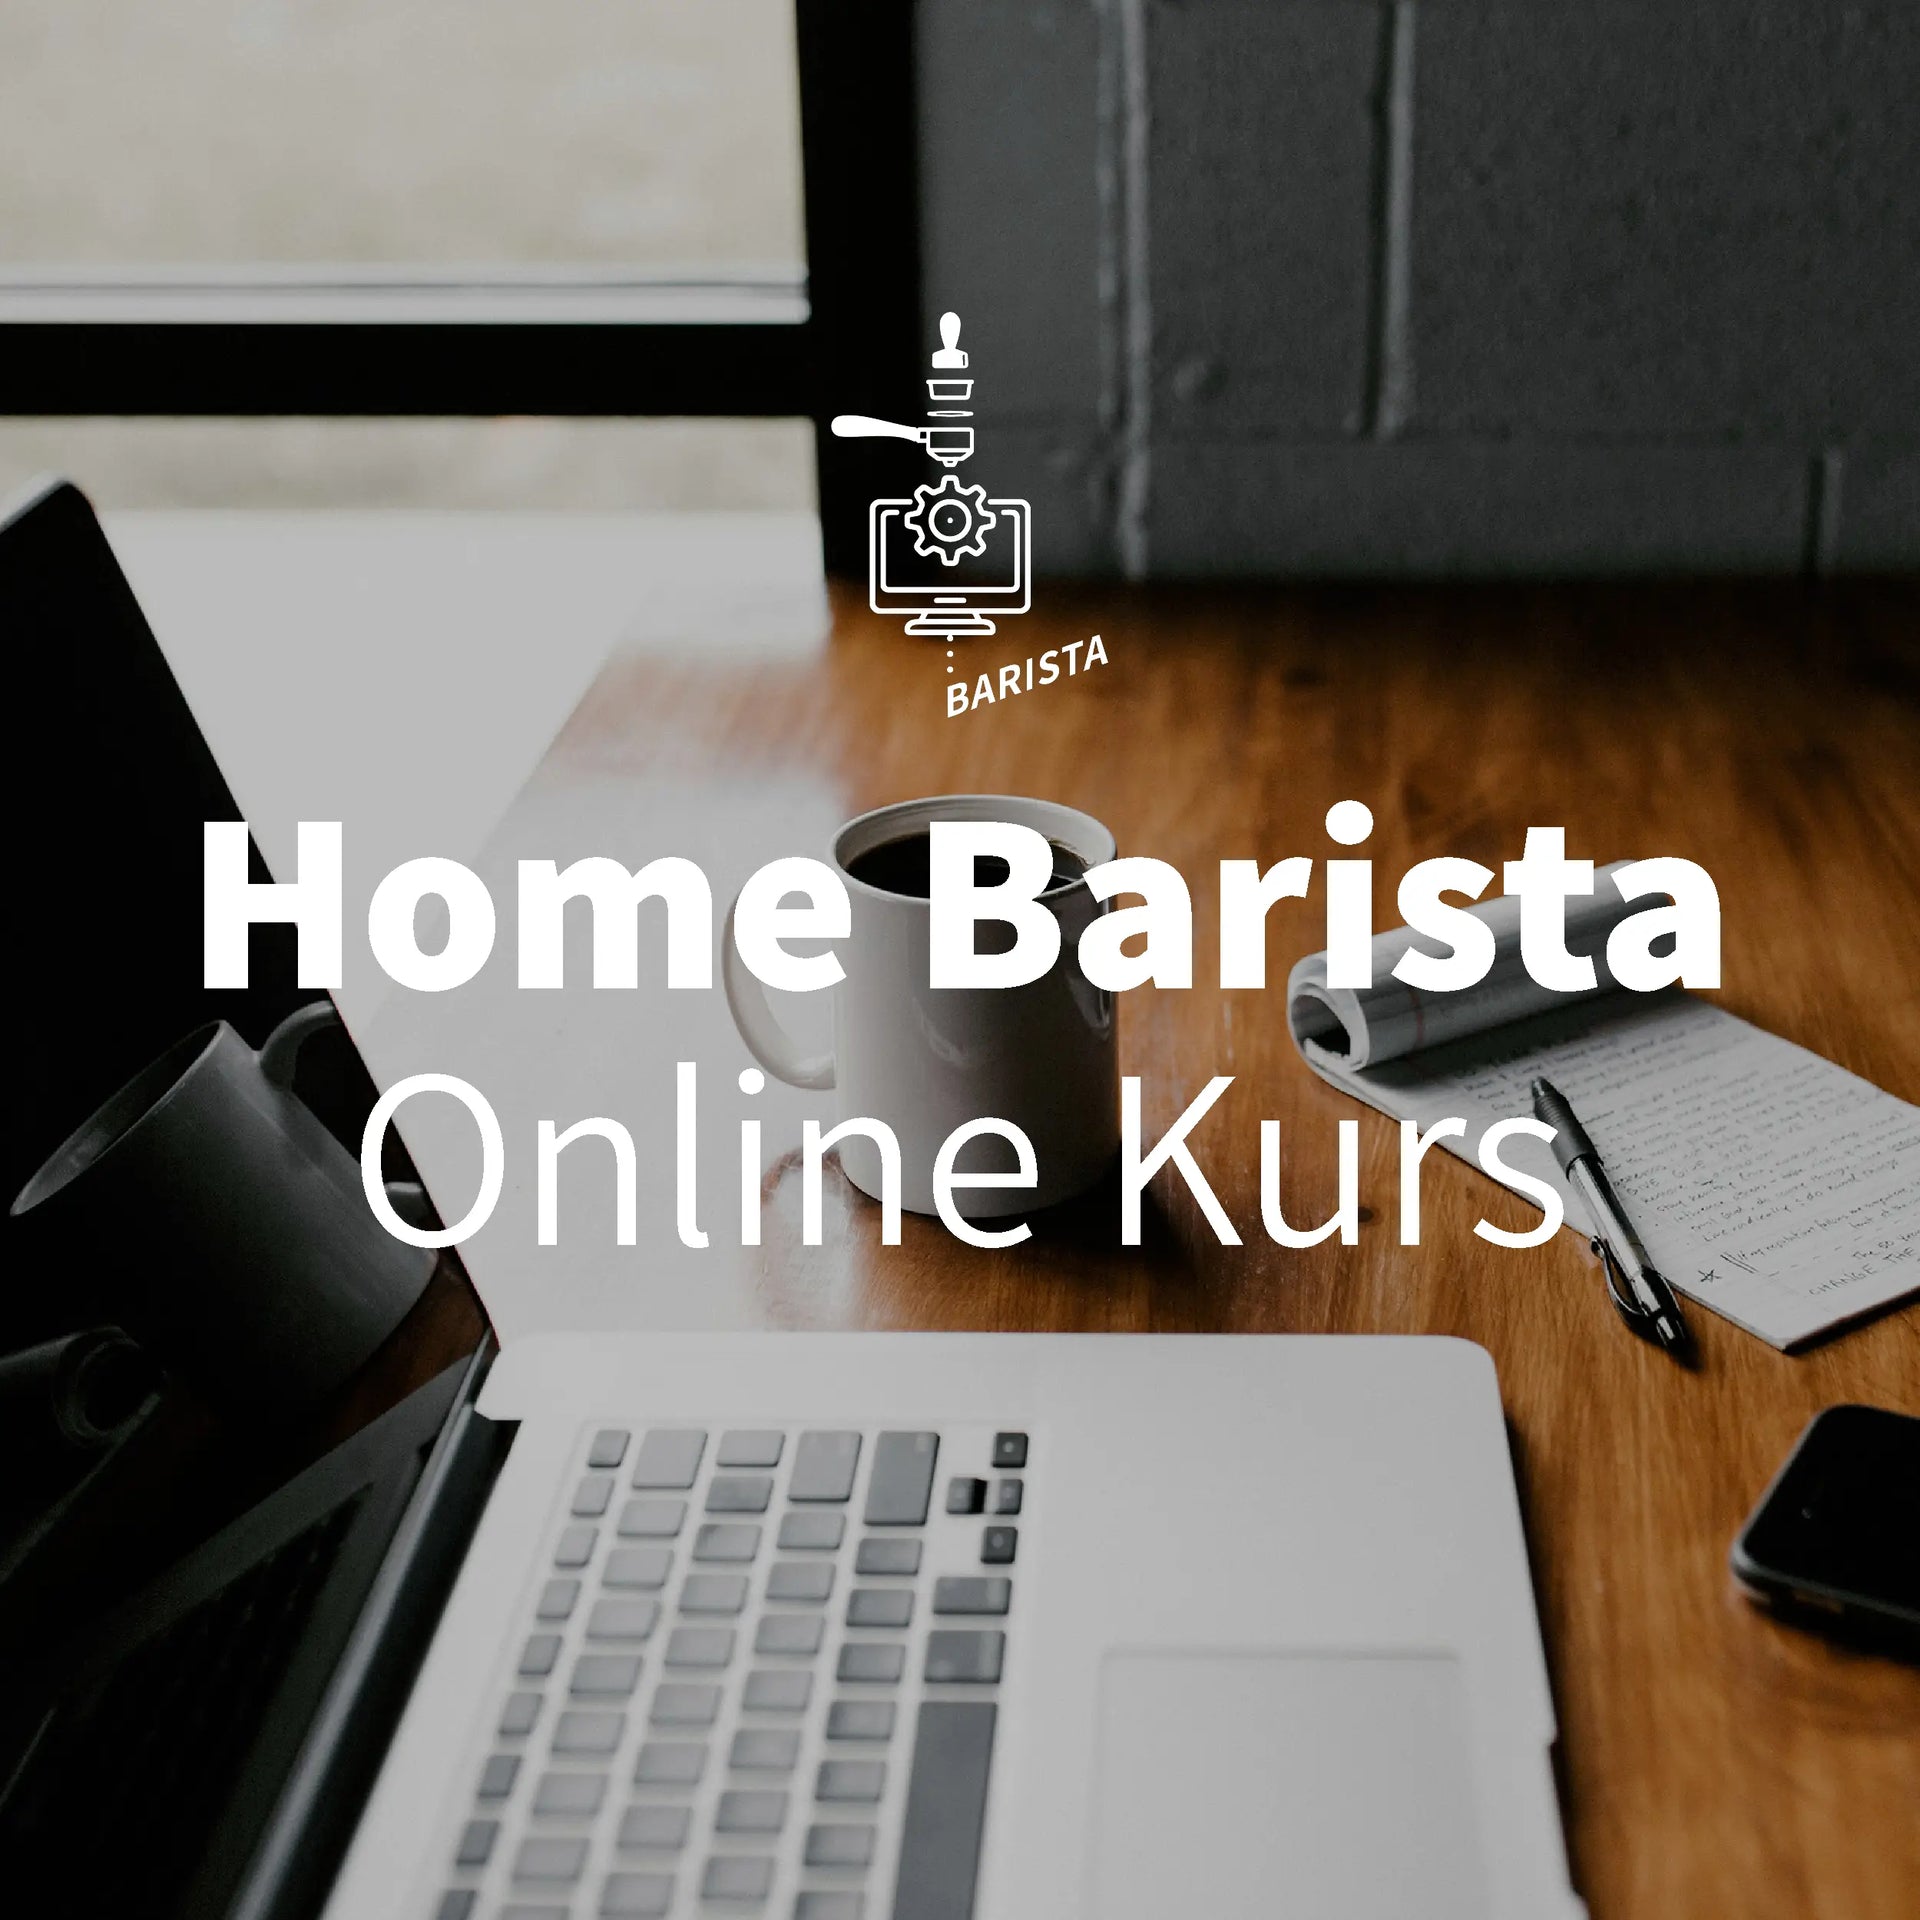 Home Barista Online Kurs - E-Learning Plattform